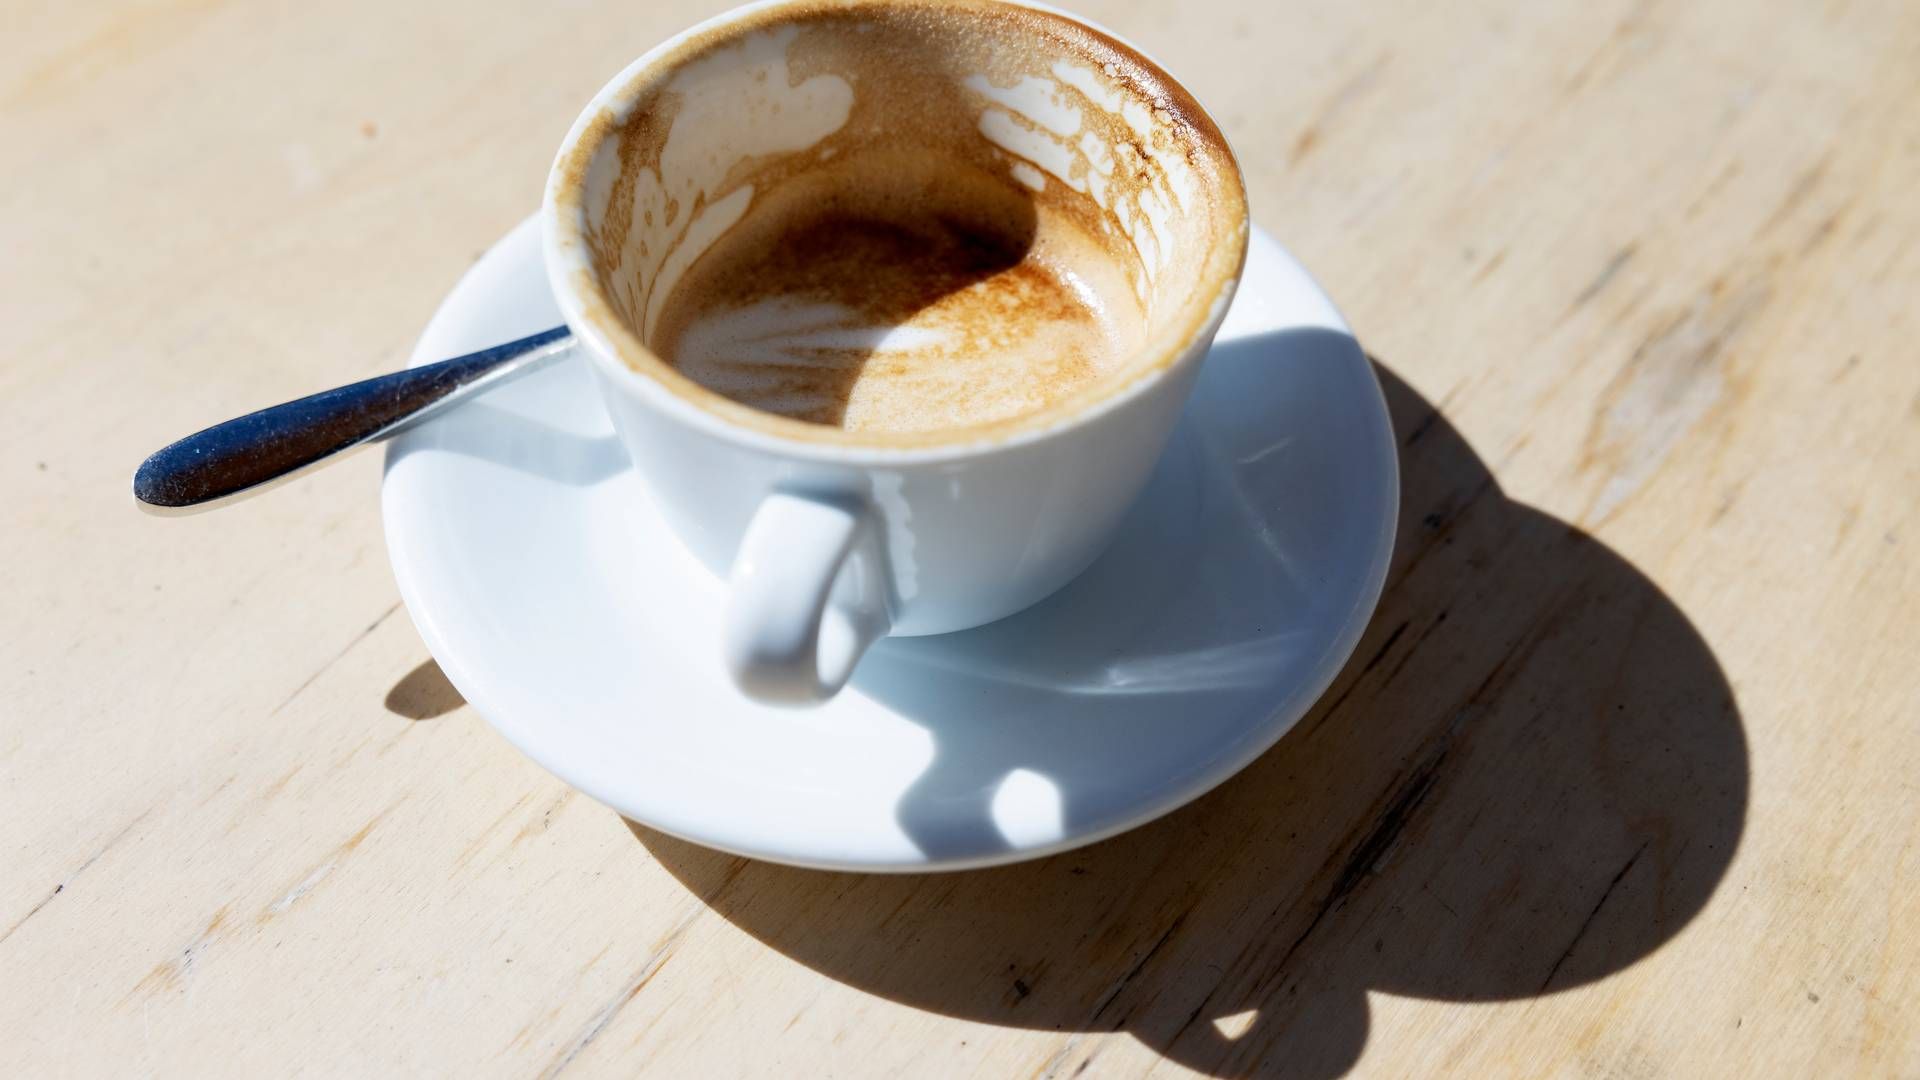 Kaffefirmaet Lavazza fortæller til avisen Politiken, at man vil ændre markedsføringen af sine Oro kaffekapsler. Der skal ikke længere stå, at de ikke har nogen CO2-påvirkning. | Foto: Thomas Borberg